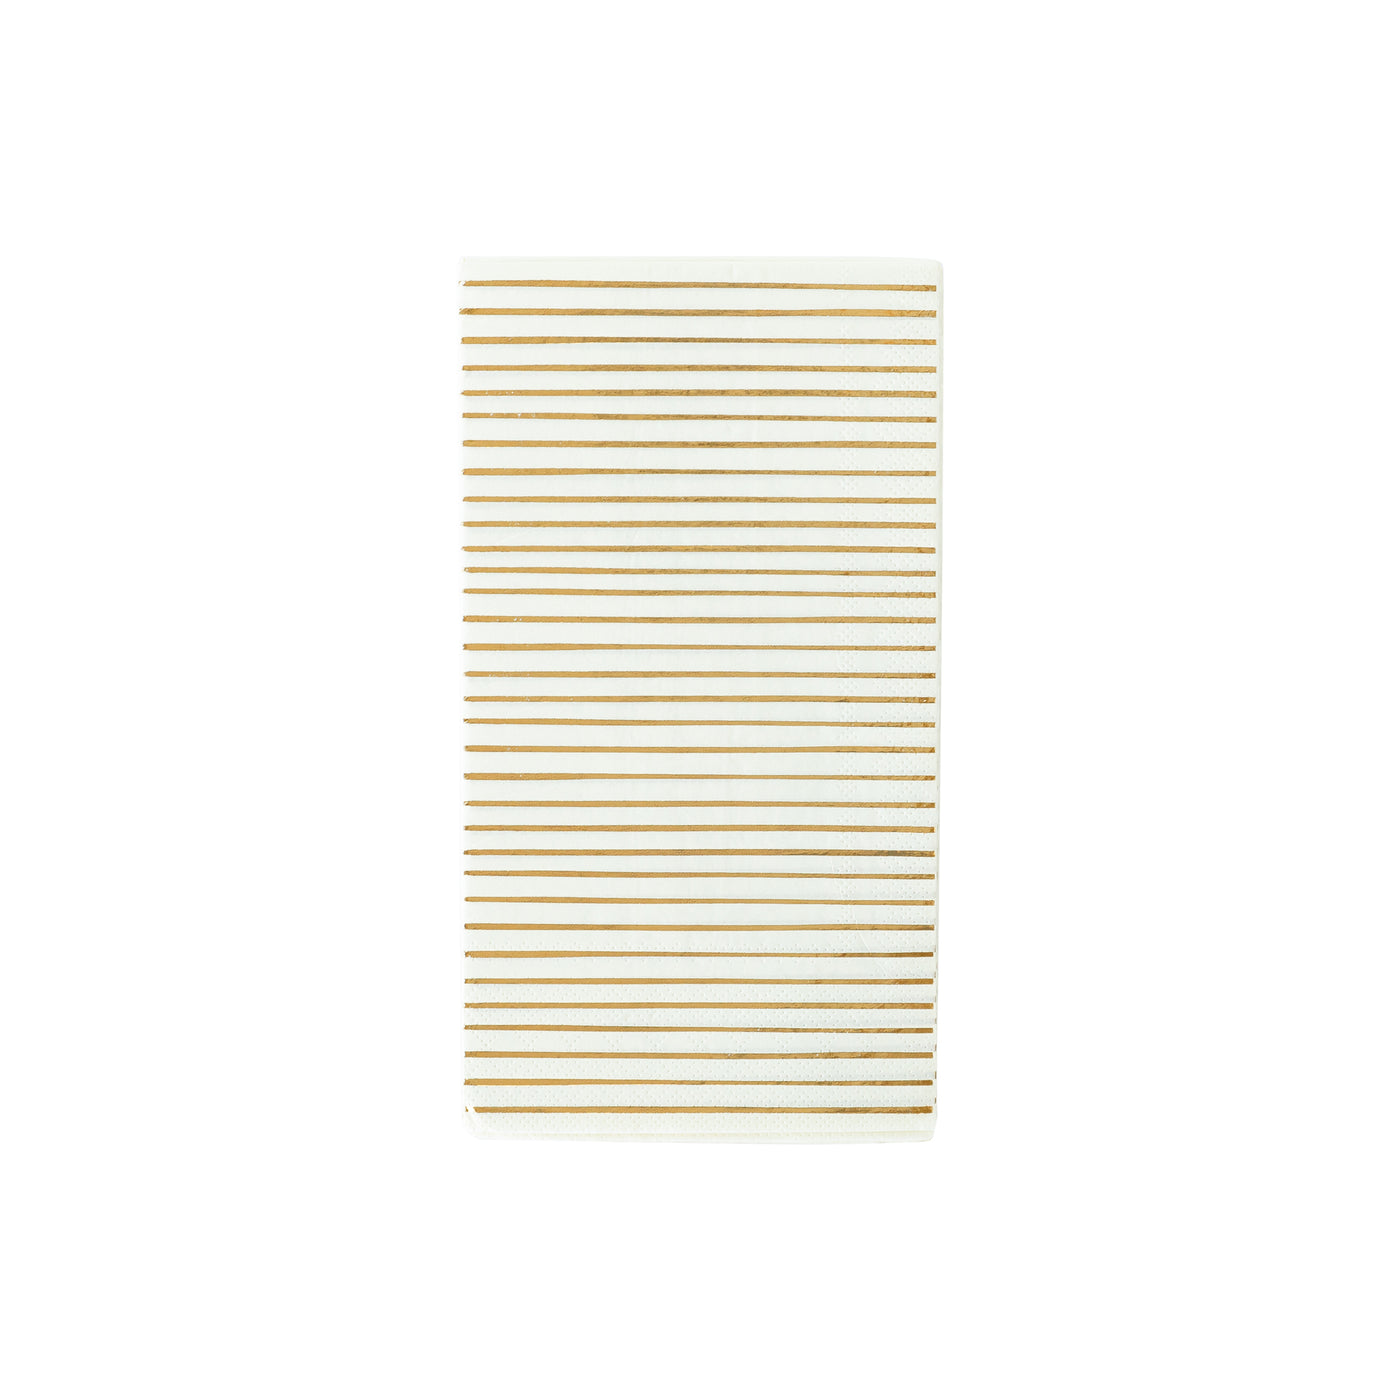 PGB945 - Gold Stripe Dinner Napkin